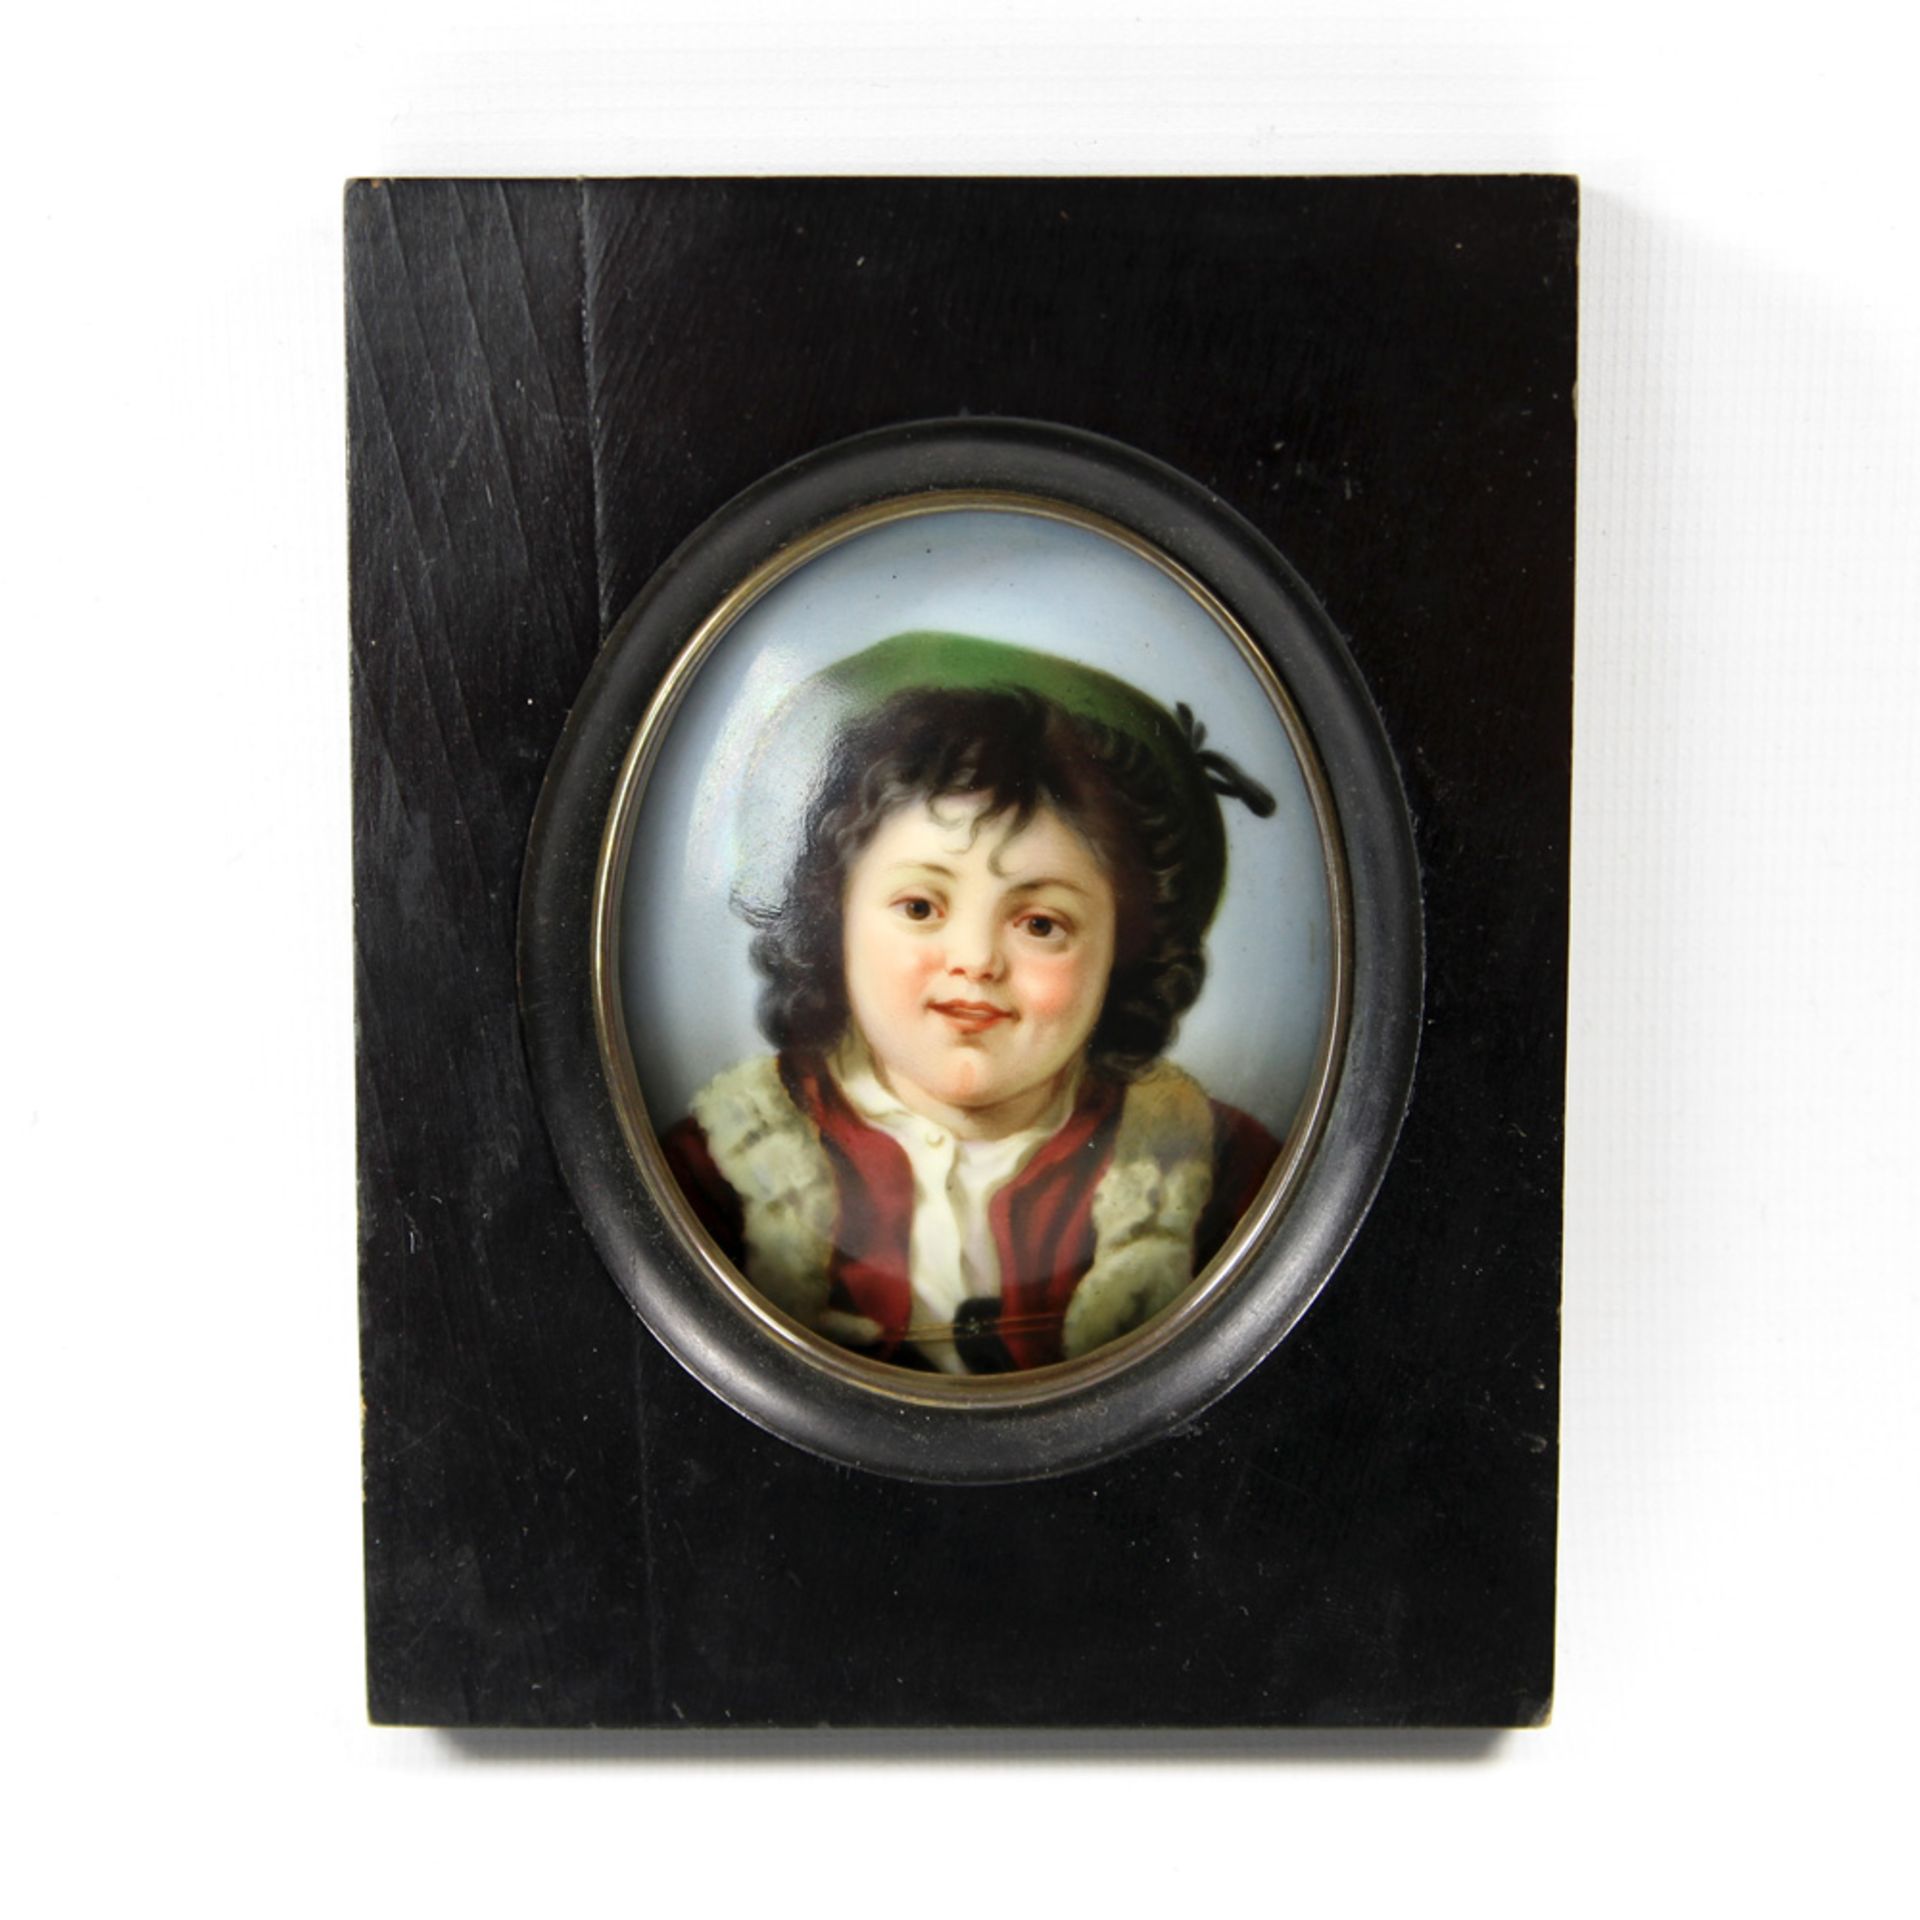 Kinderportrait-Miniatur auf Porzellan, wohl 1. H. 20. Jh. Ovale Form, rückseitig mit Etikett und